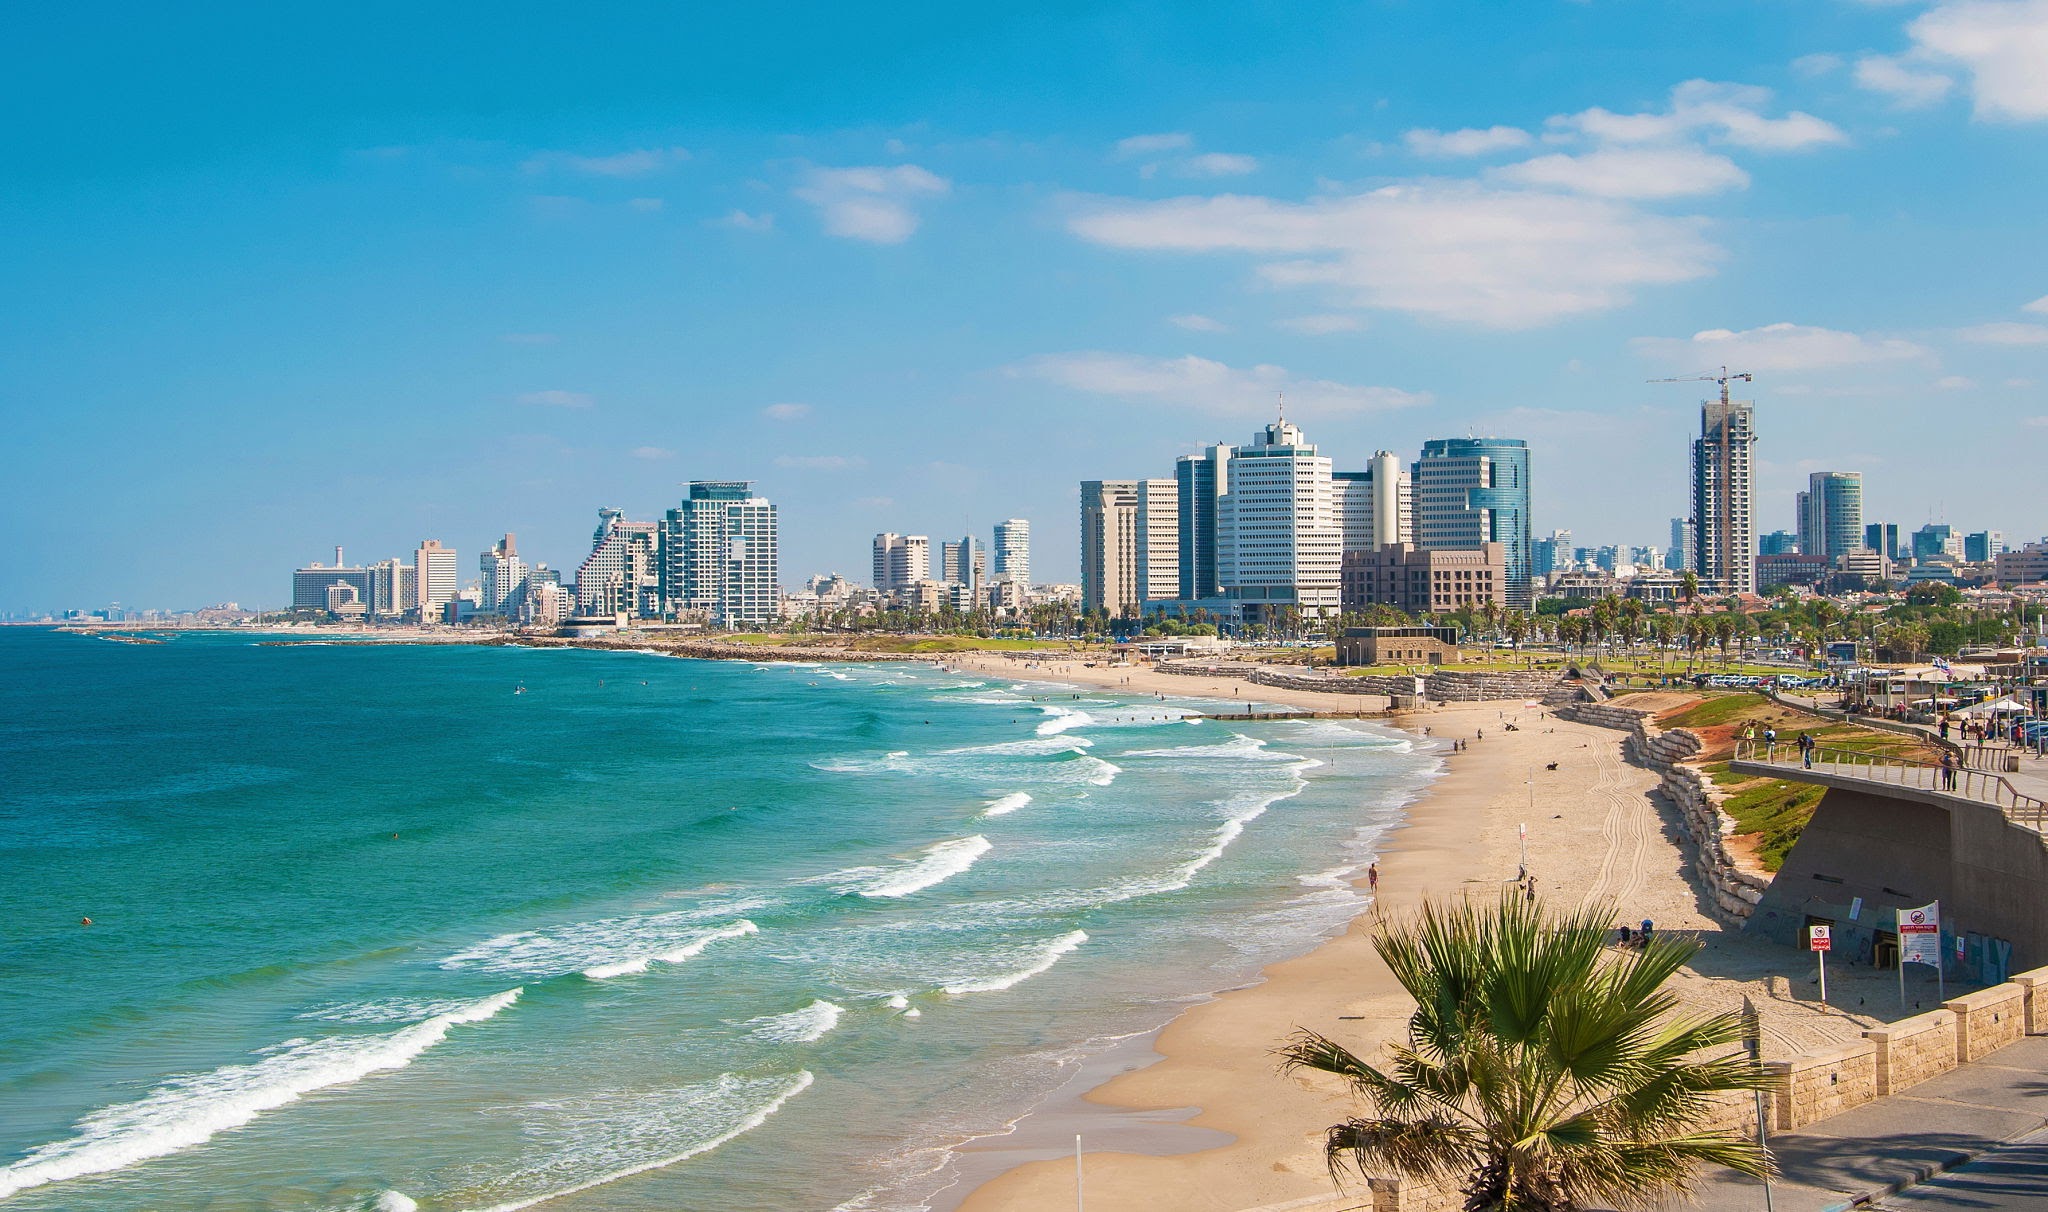 Israel Summer Destination - Tel Aviv